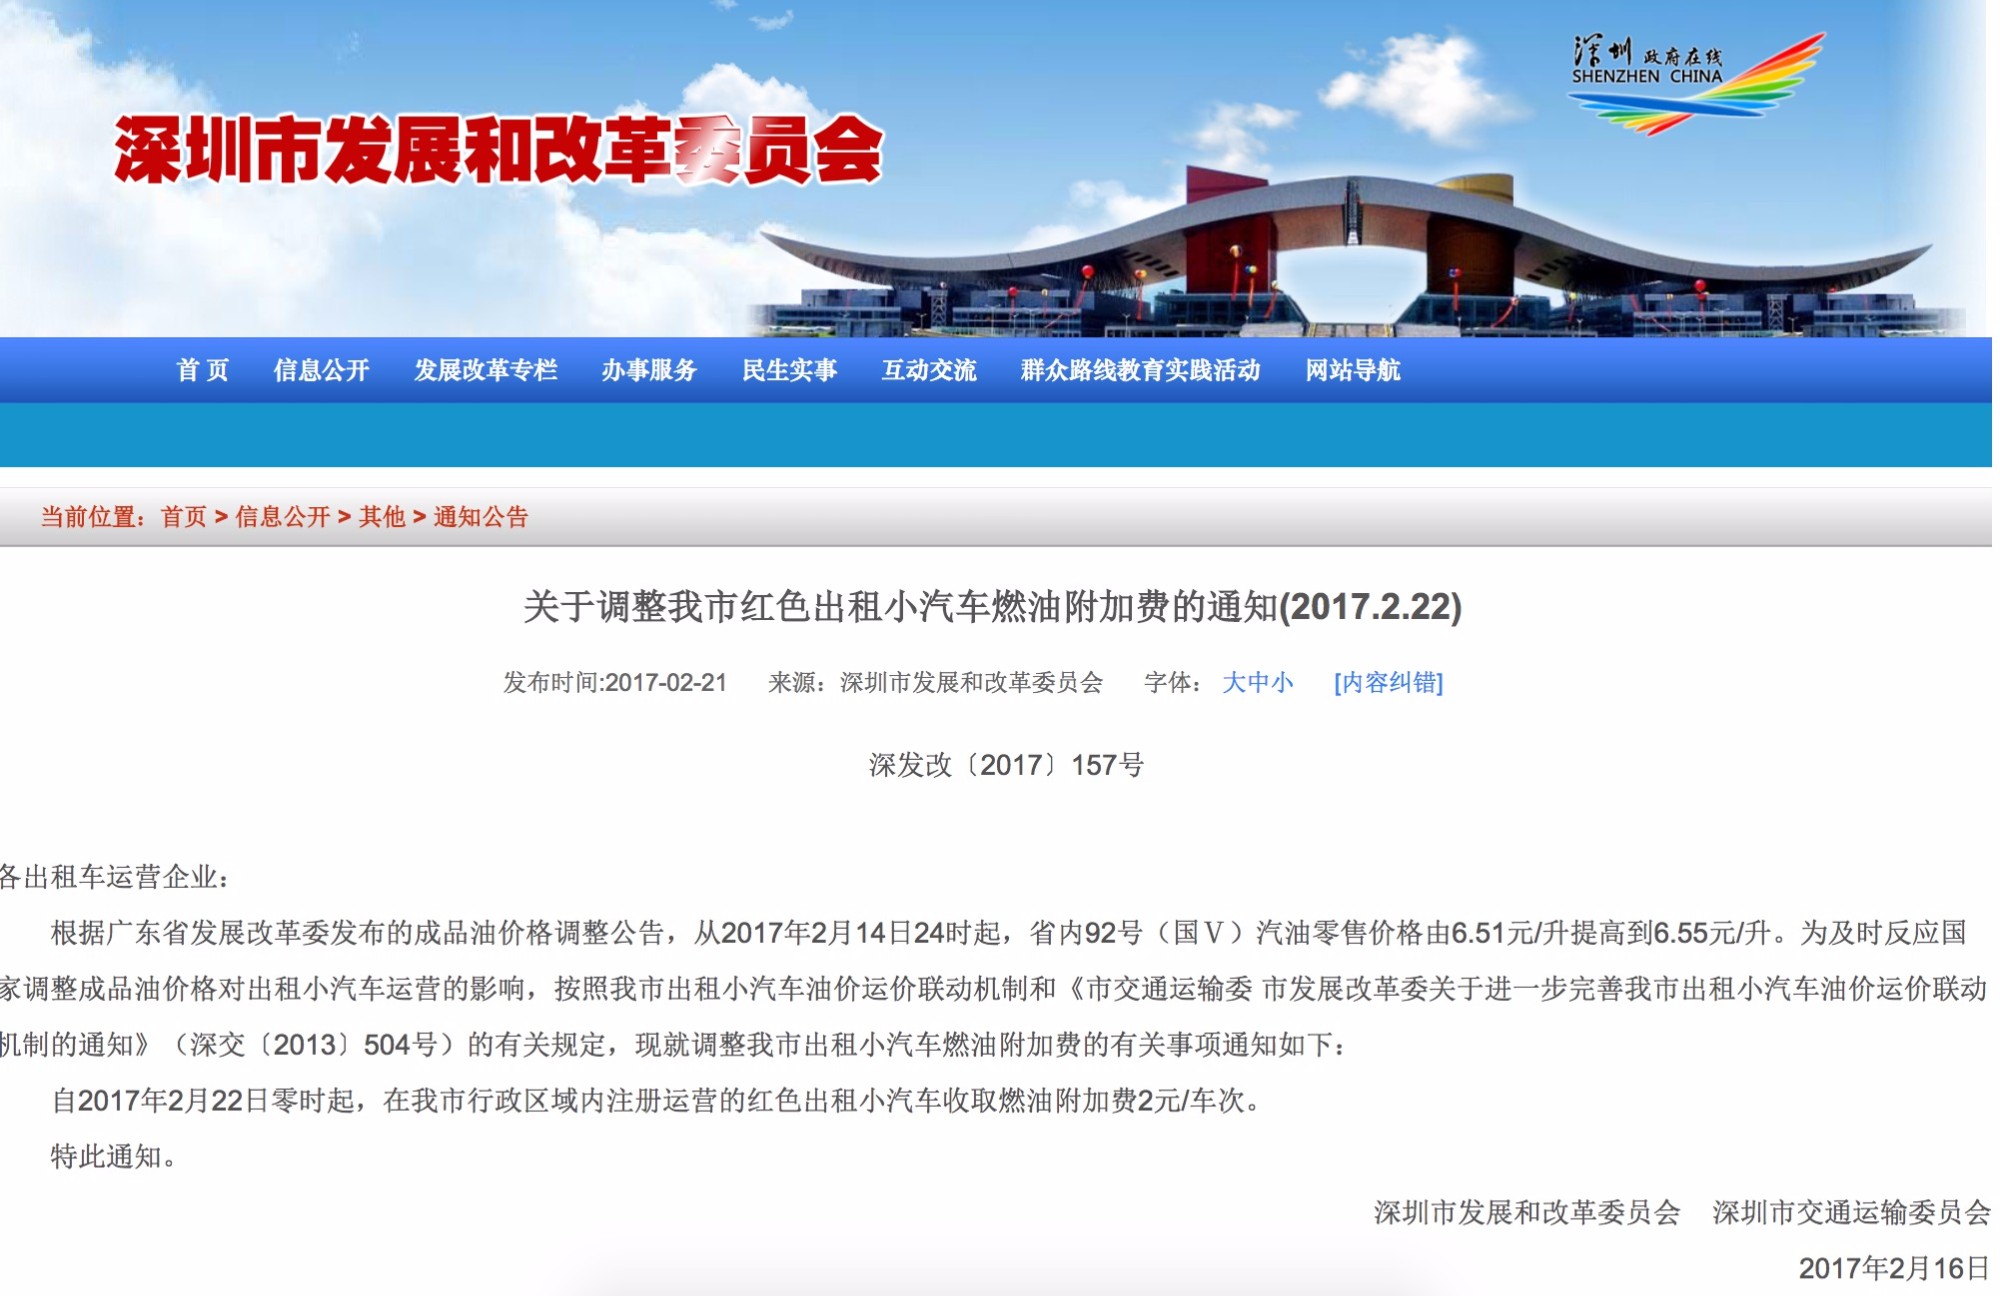 shenzhen development reform commission website